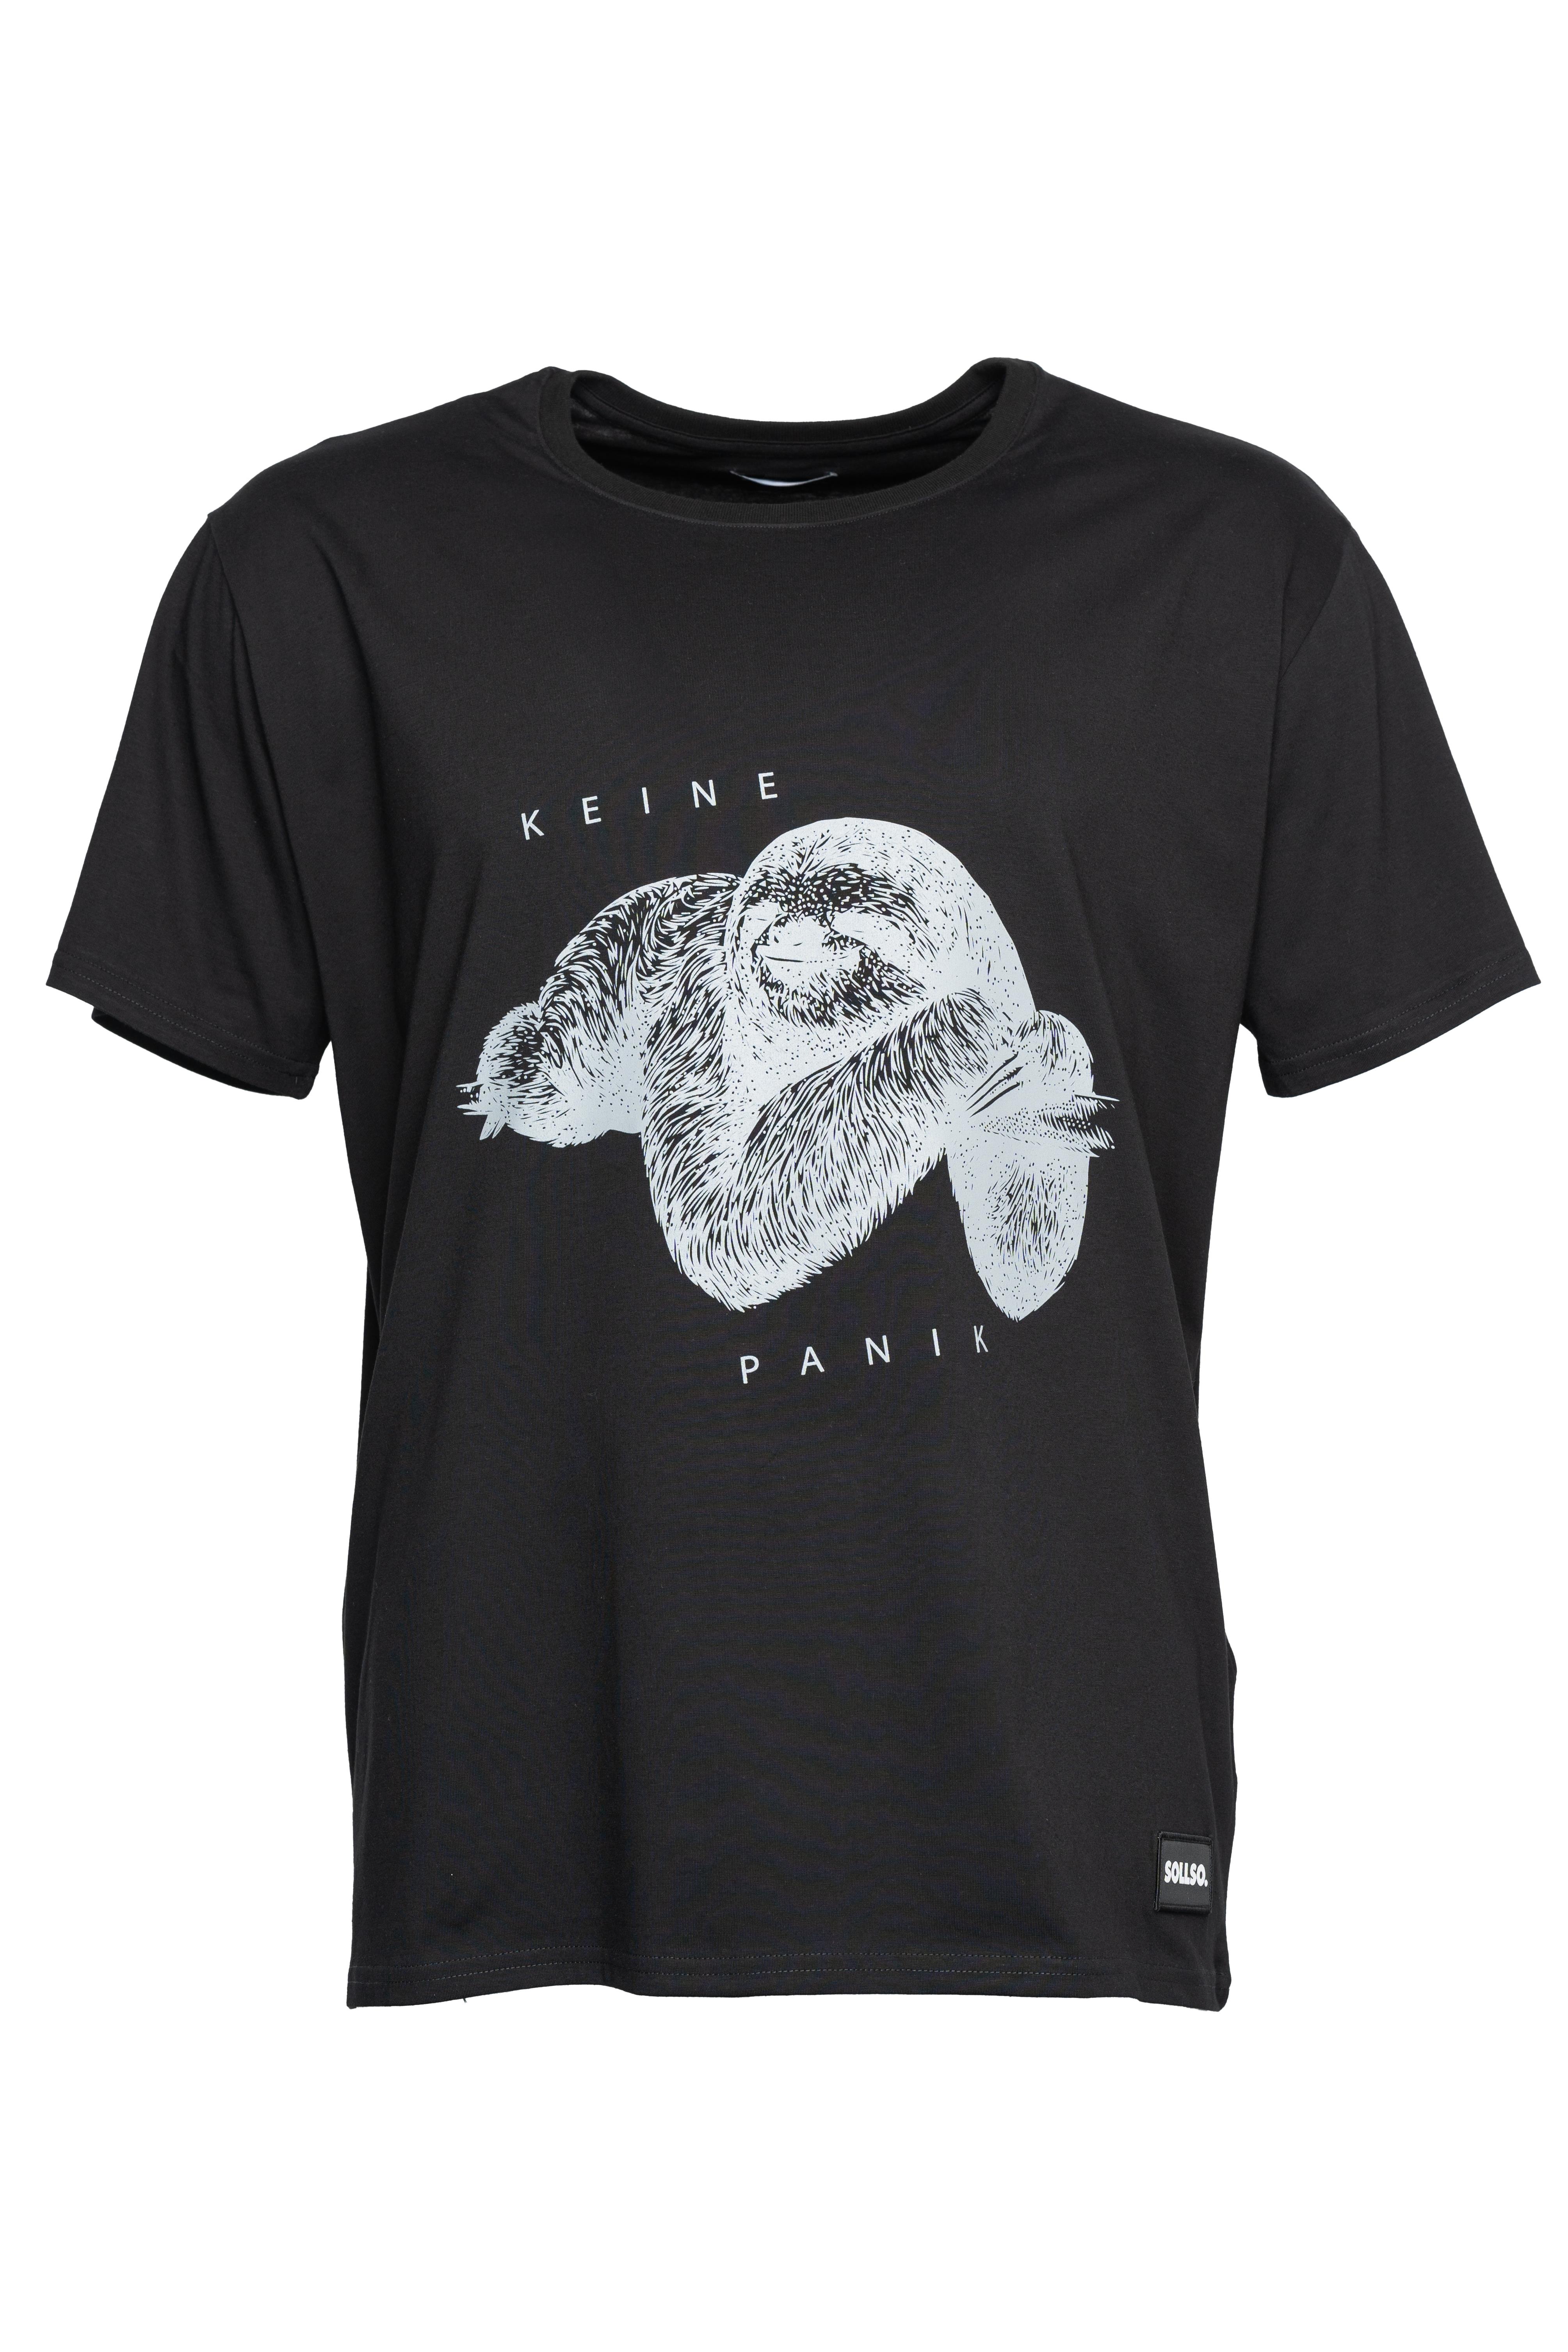 SOLLSO. T-Shirt "Keine Panik Faultier", Farbe Dark Black, Größe 10XL